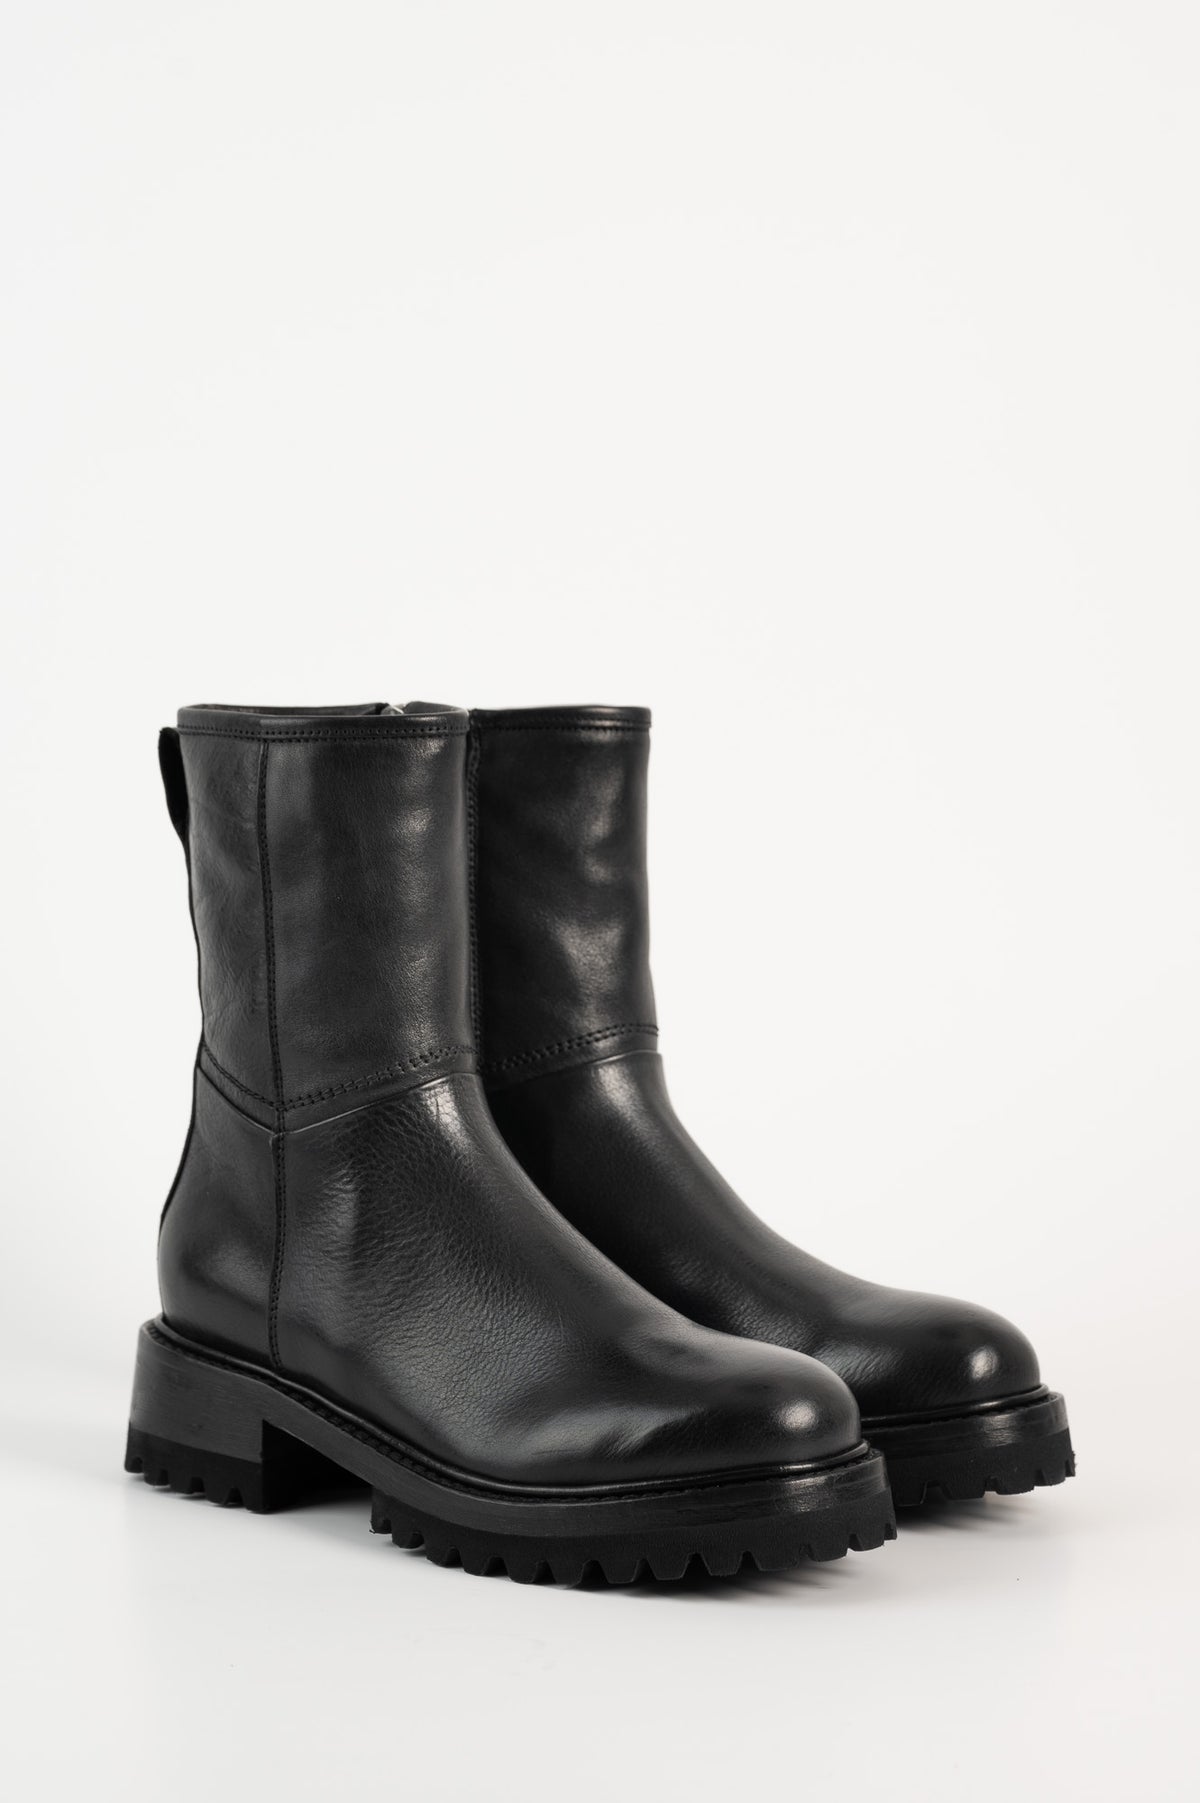 Warm Lined Boot Varenne 904 | Black Leather